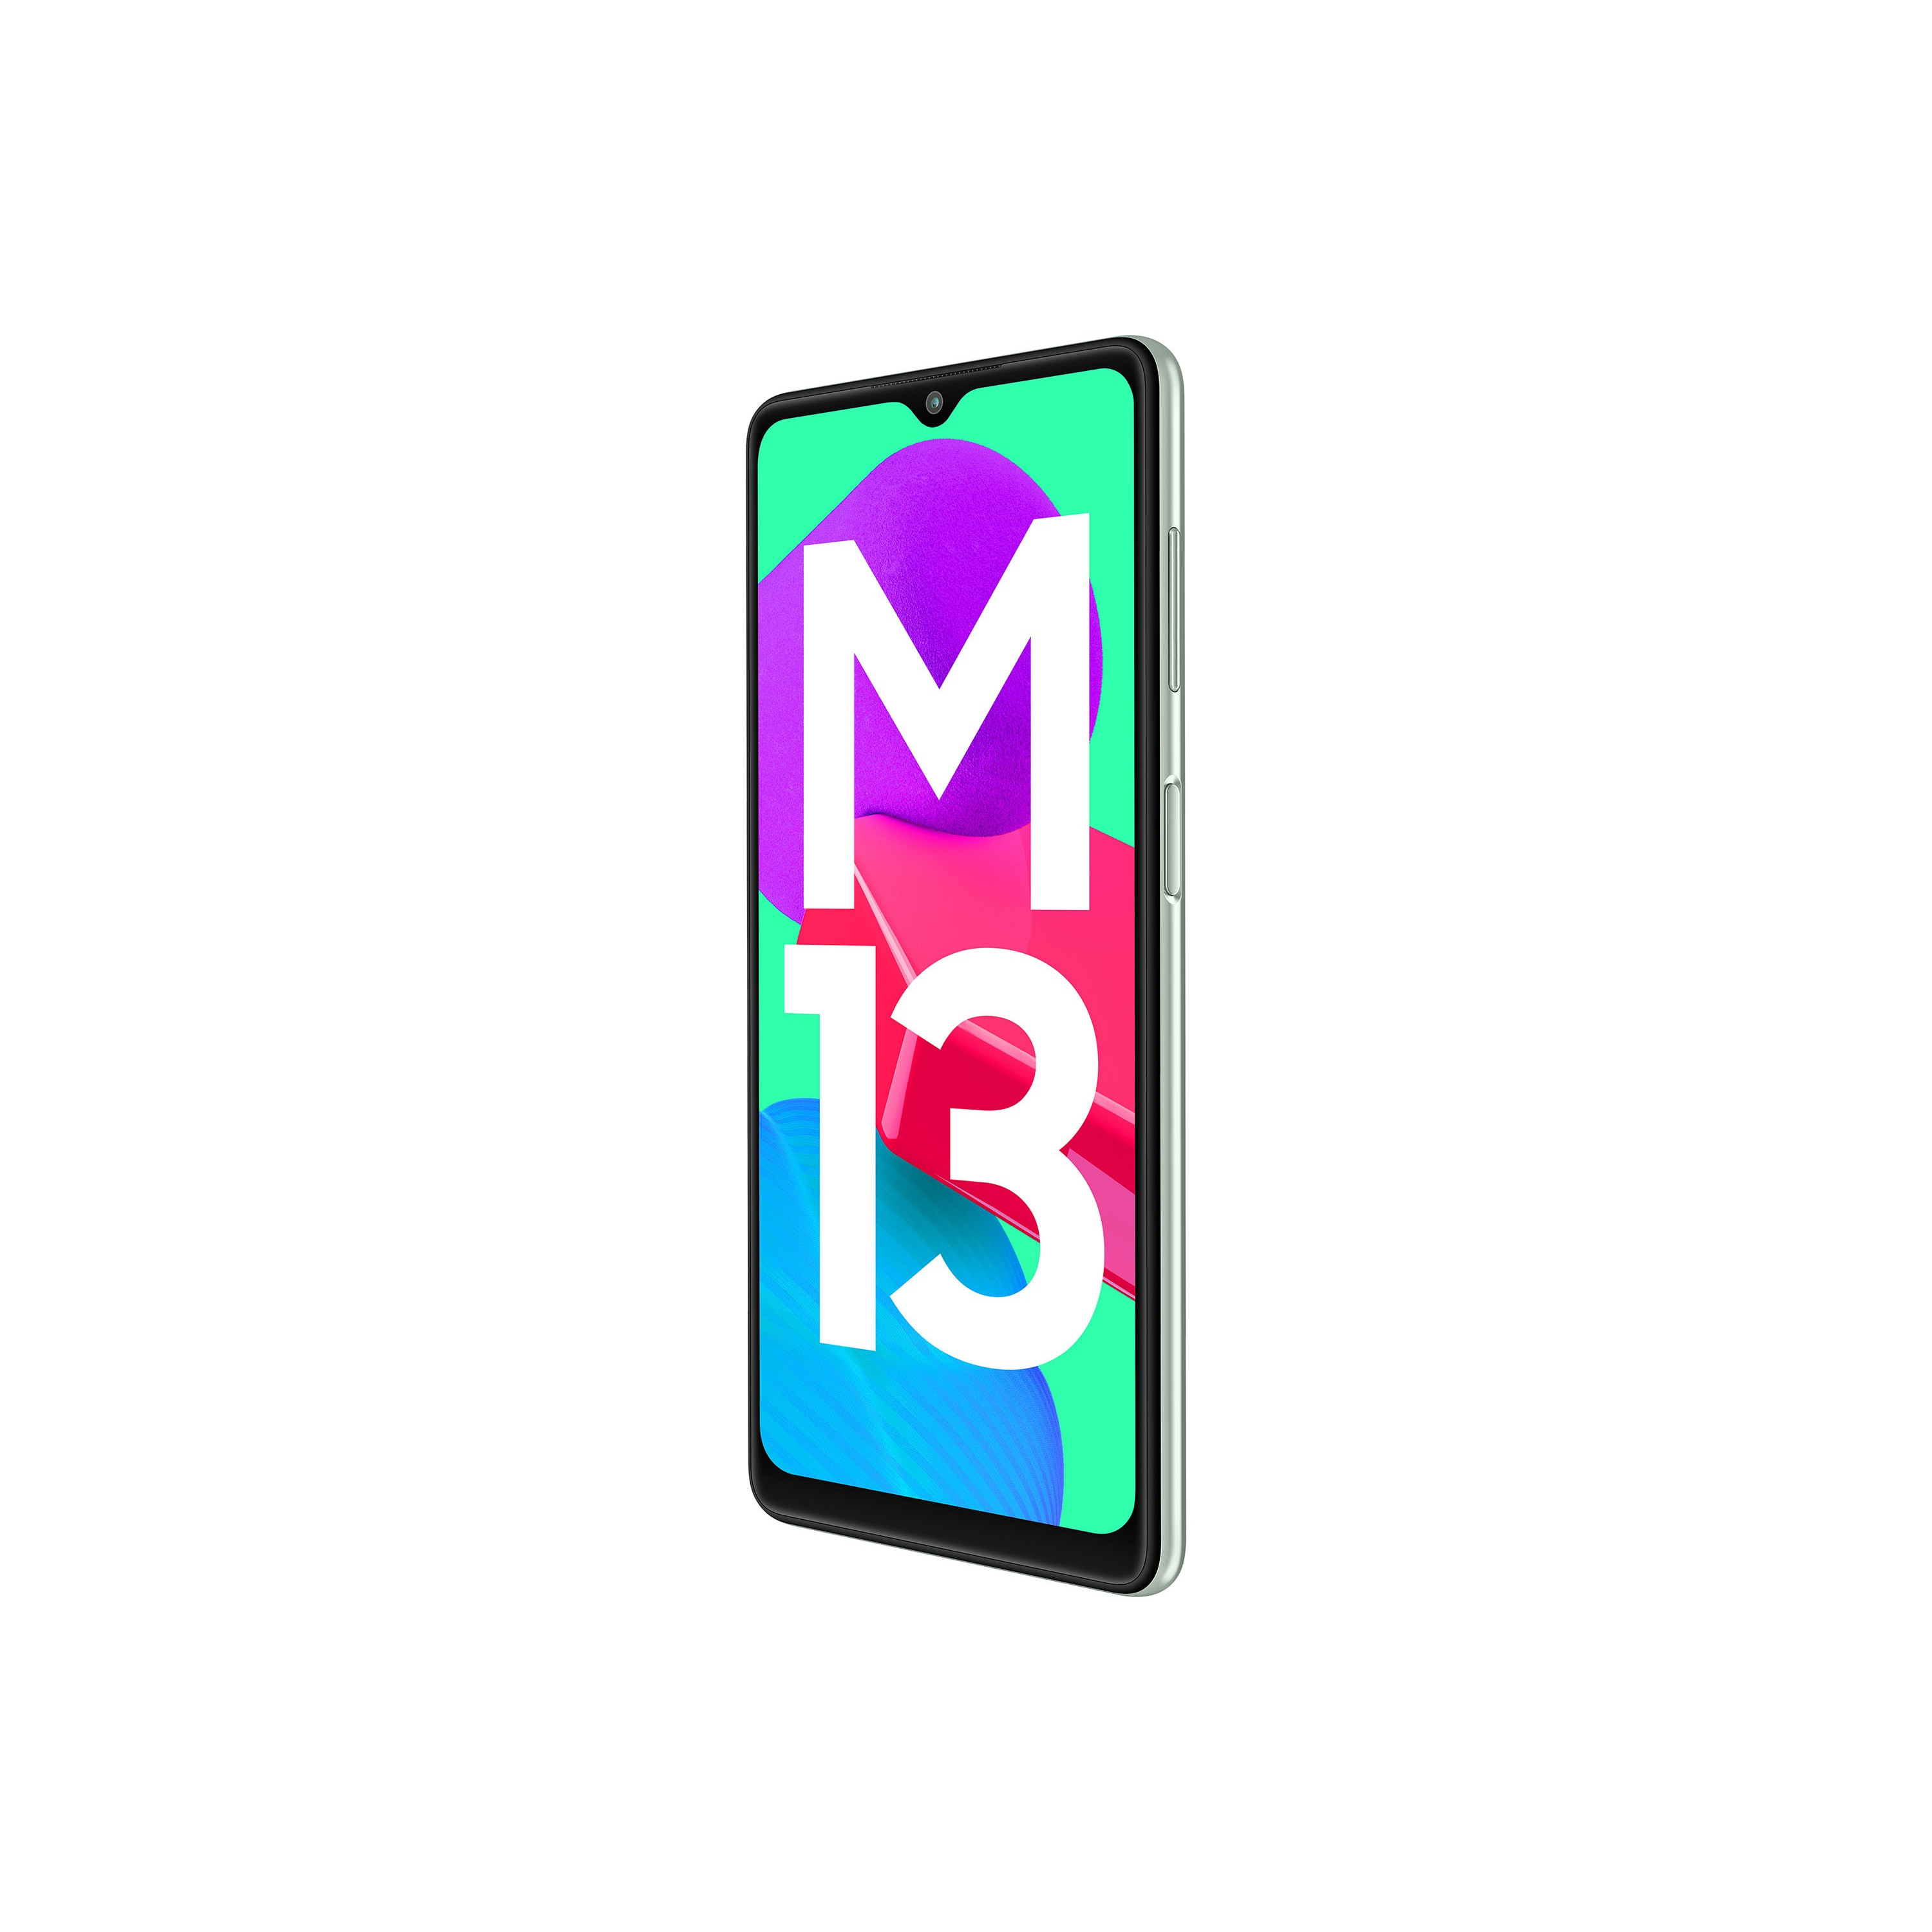 گوشی موبایل سامسونگ مدل Galaxy M13 حافظه 64 گیگابایت  و 4 گیگابایت رم